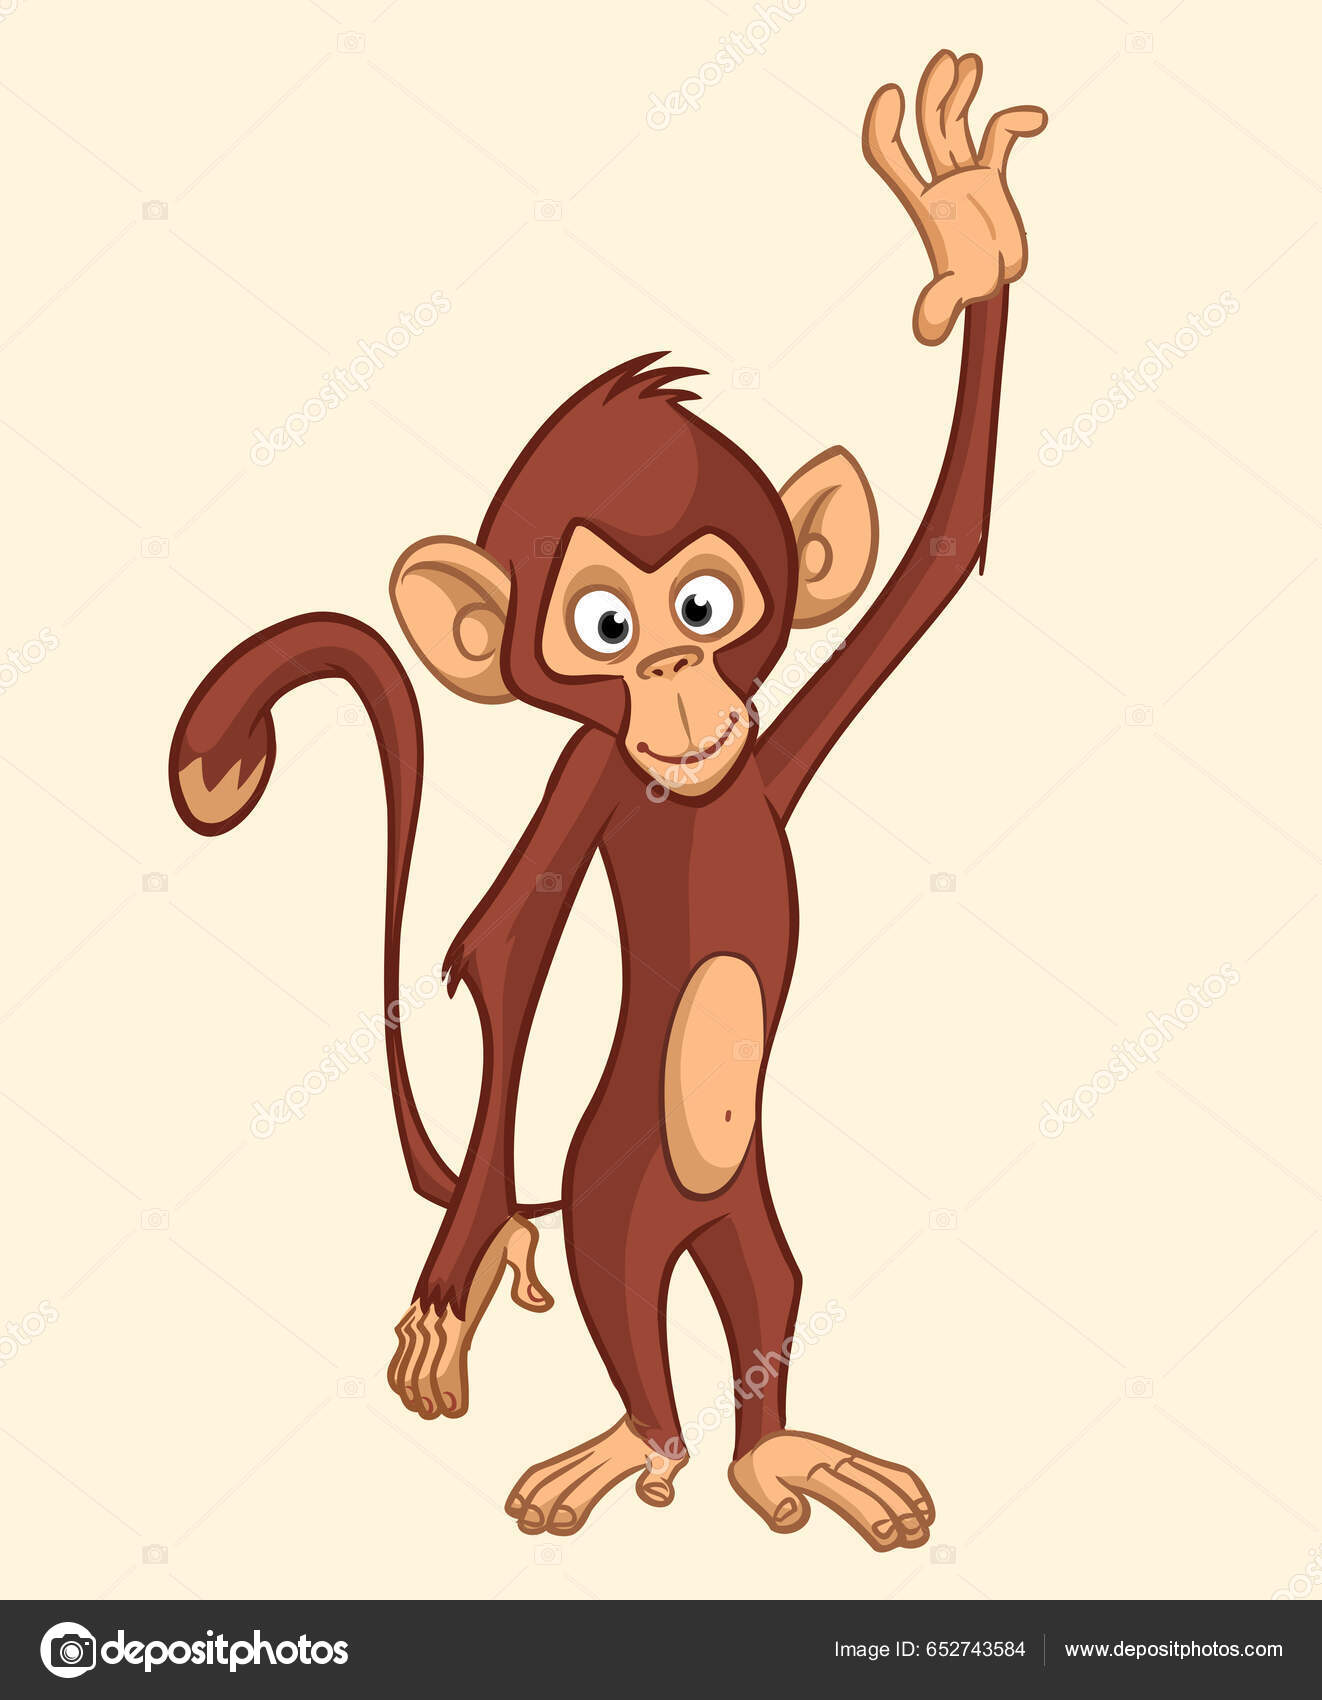 macaco engraçado dos desenhos animados sentado com sorriso